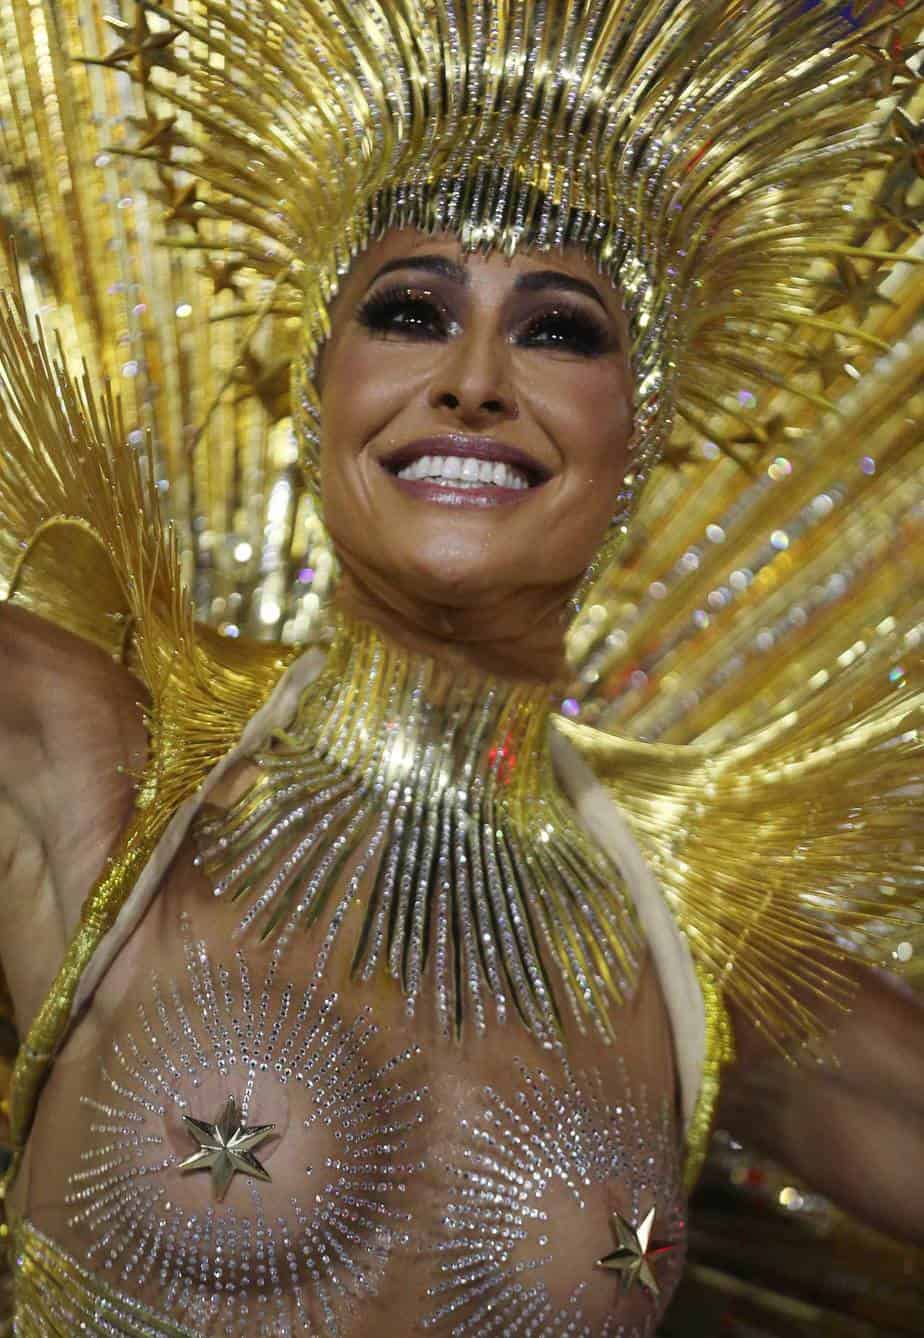 Carnaval de Rio 2018